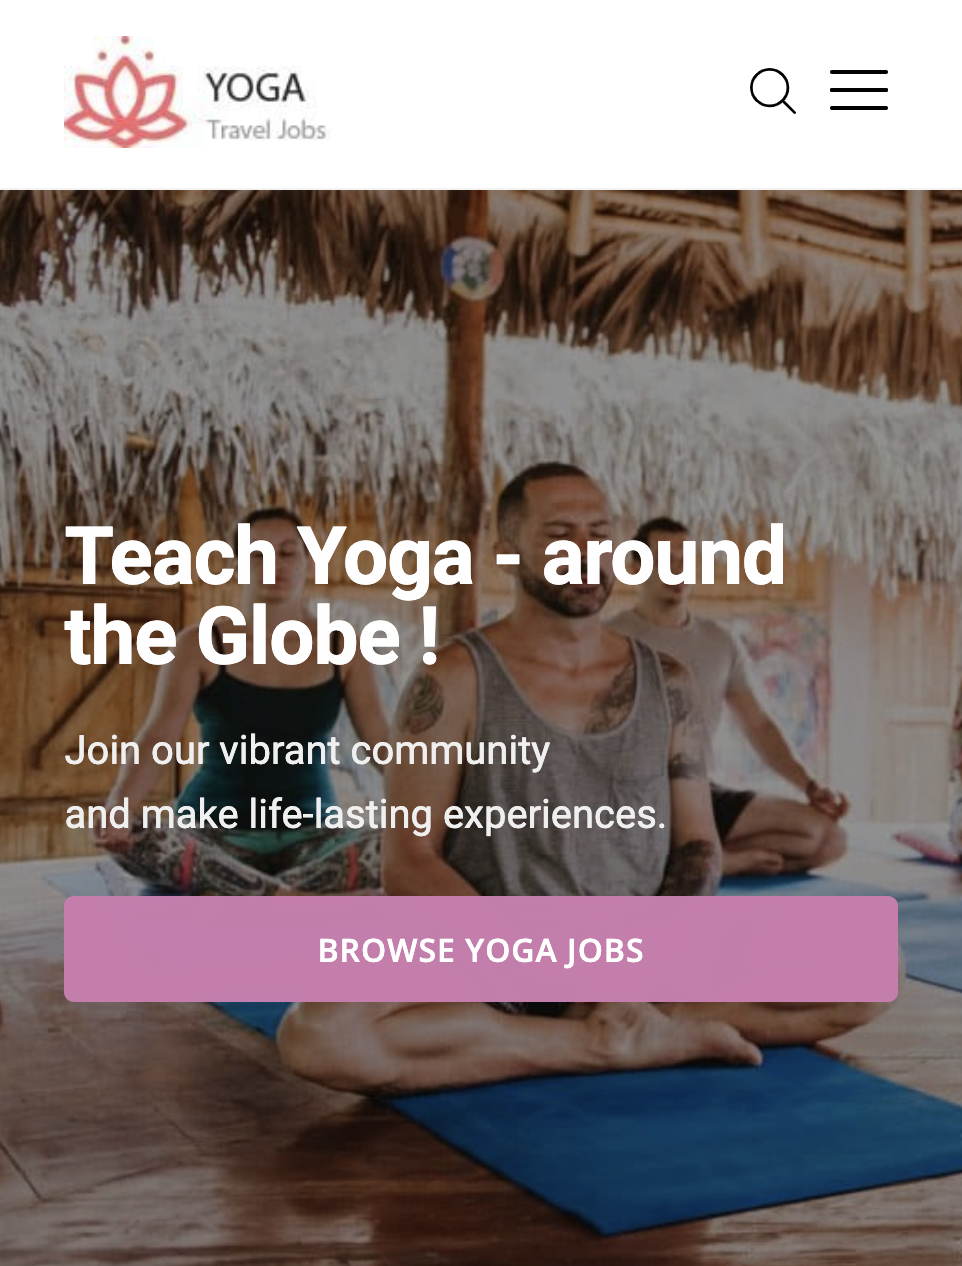 Yoga Reise Jobs